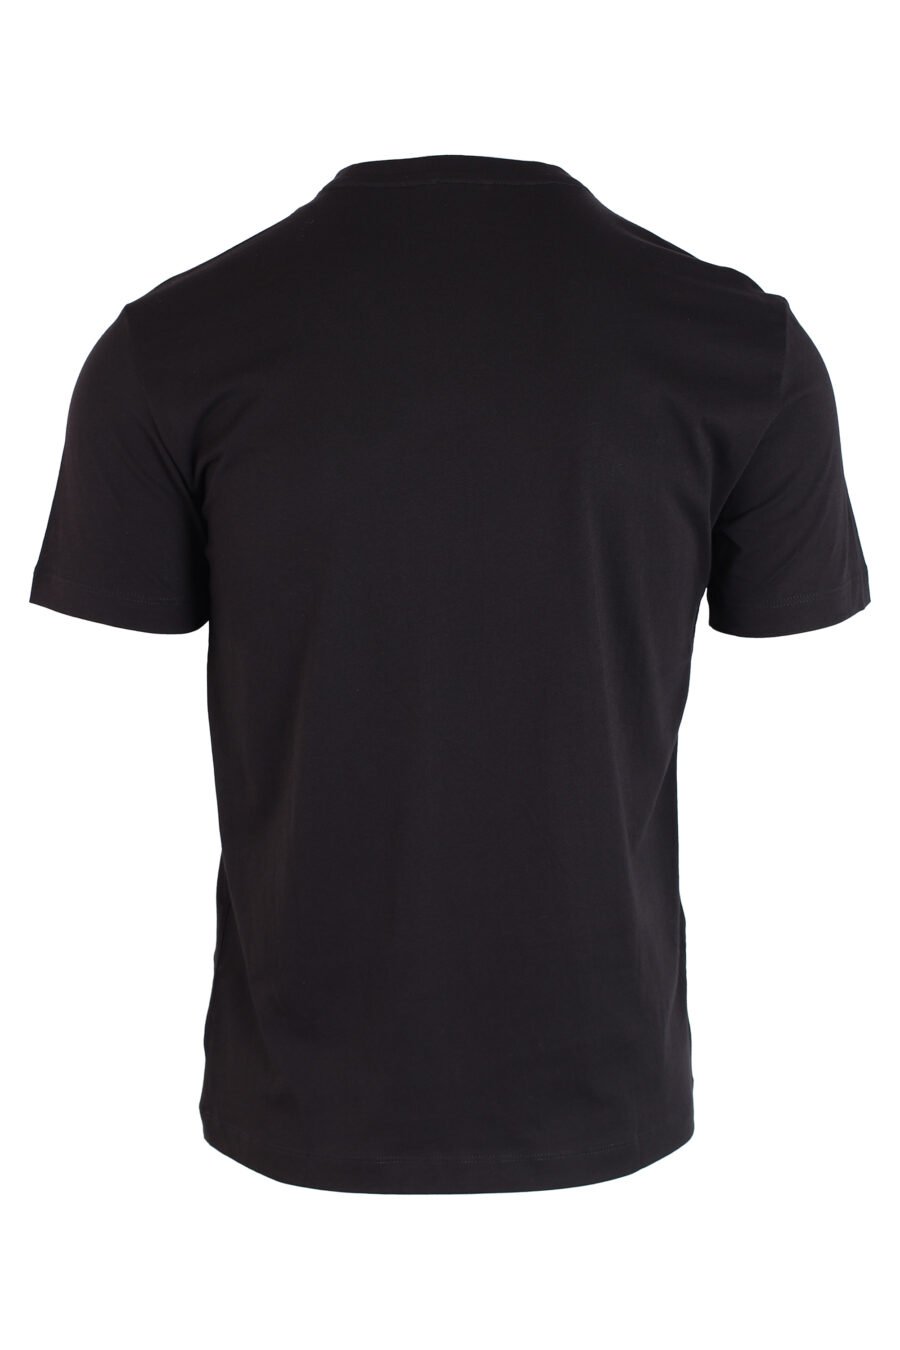 T-shirt noir avec maxilogo et points dorés - IMG 3248